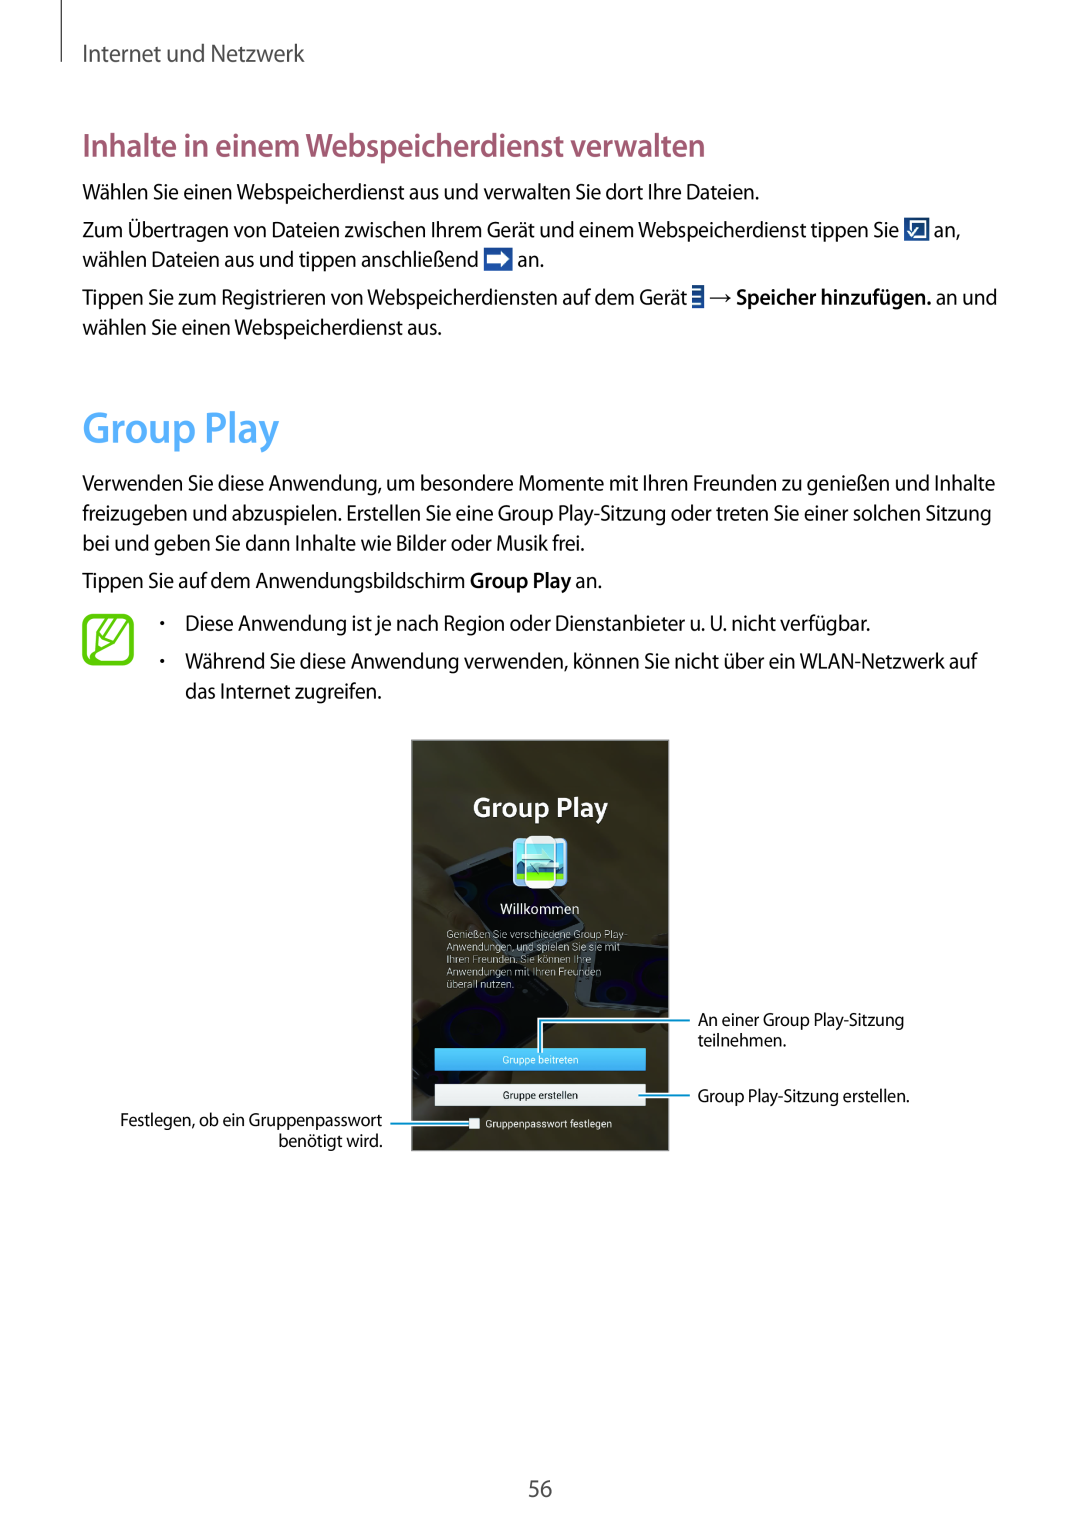 Samsung SM-T3100MKATPH, SM-T3100ZWAXEO Group Play, Inhalte in einem Webspeicherdienst verwalten, Internet und Netzwerk 